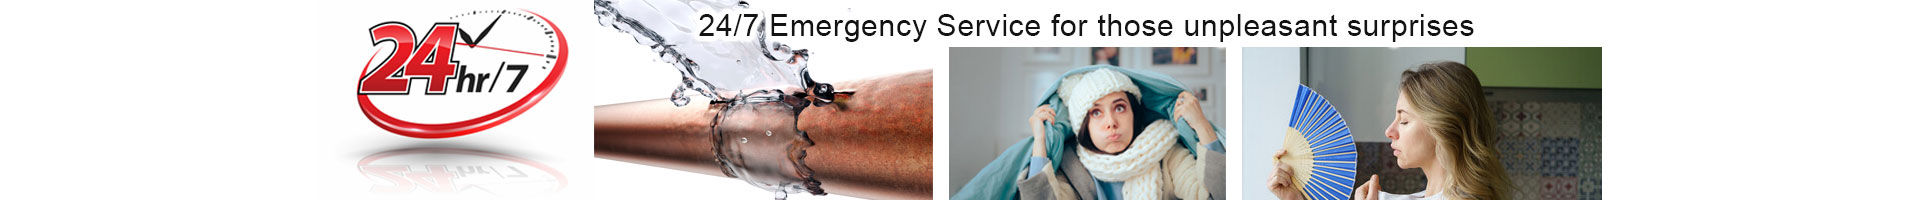 24/7 Emergency service for those unpleasant surprises